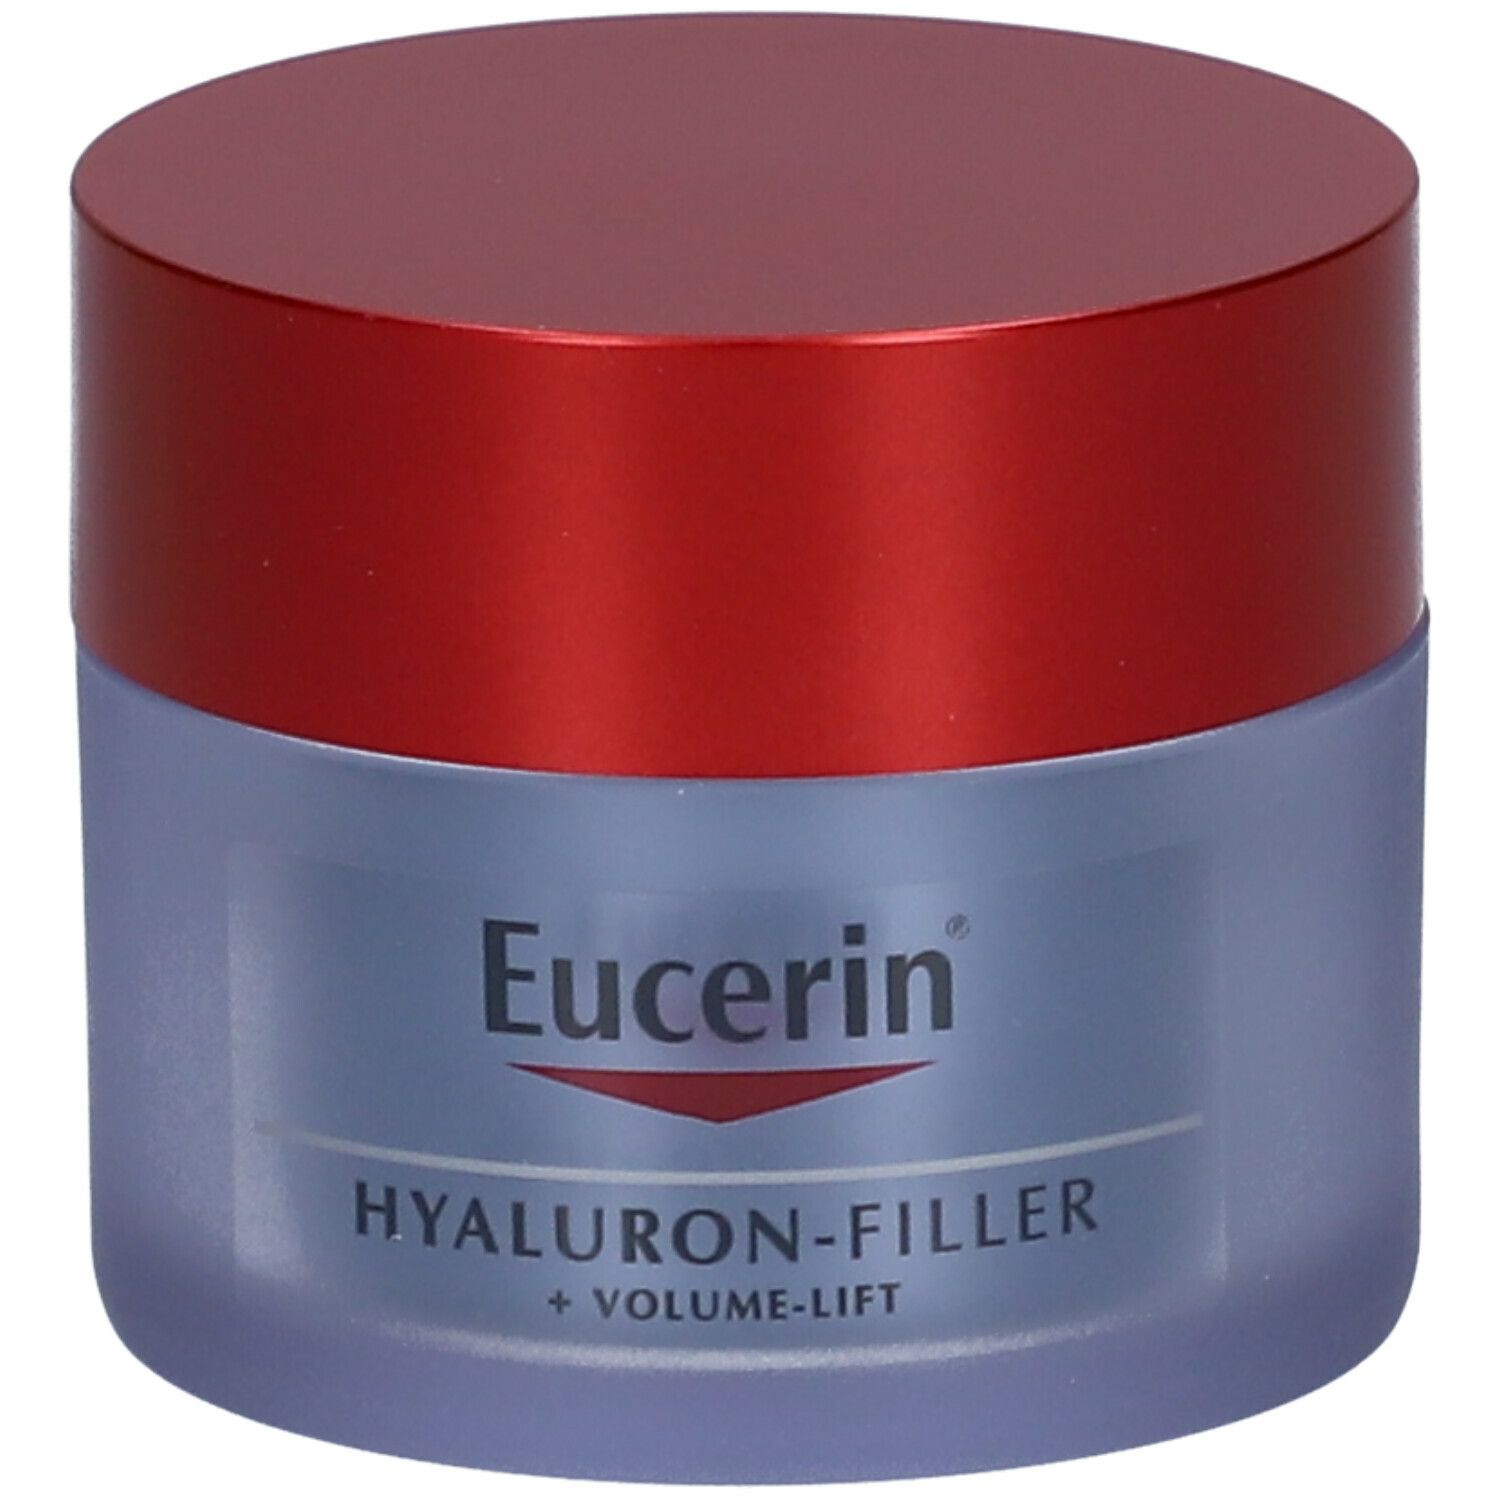 Eucerin® Hyaluron-Filler + Volume-Lift Soin de nuit